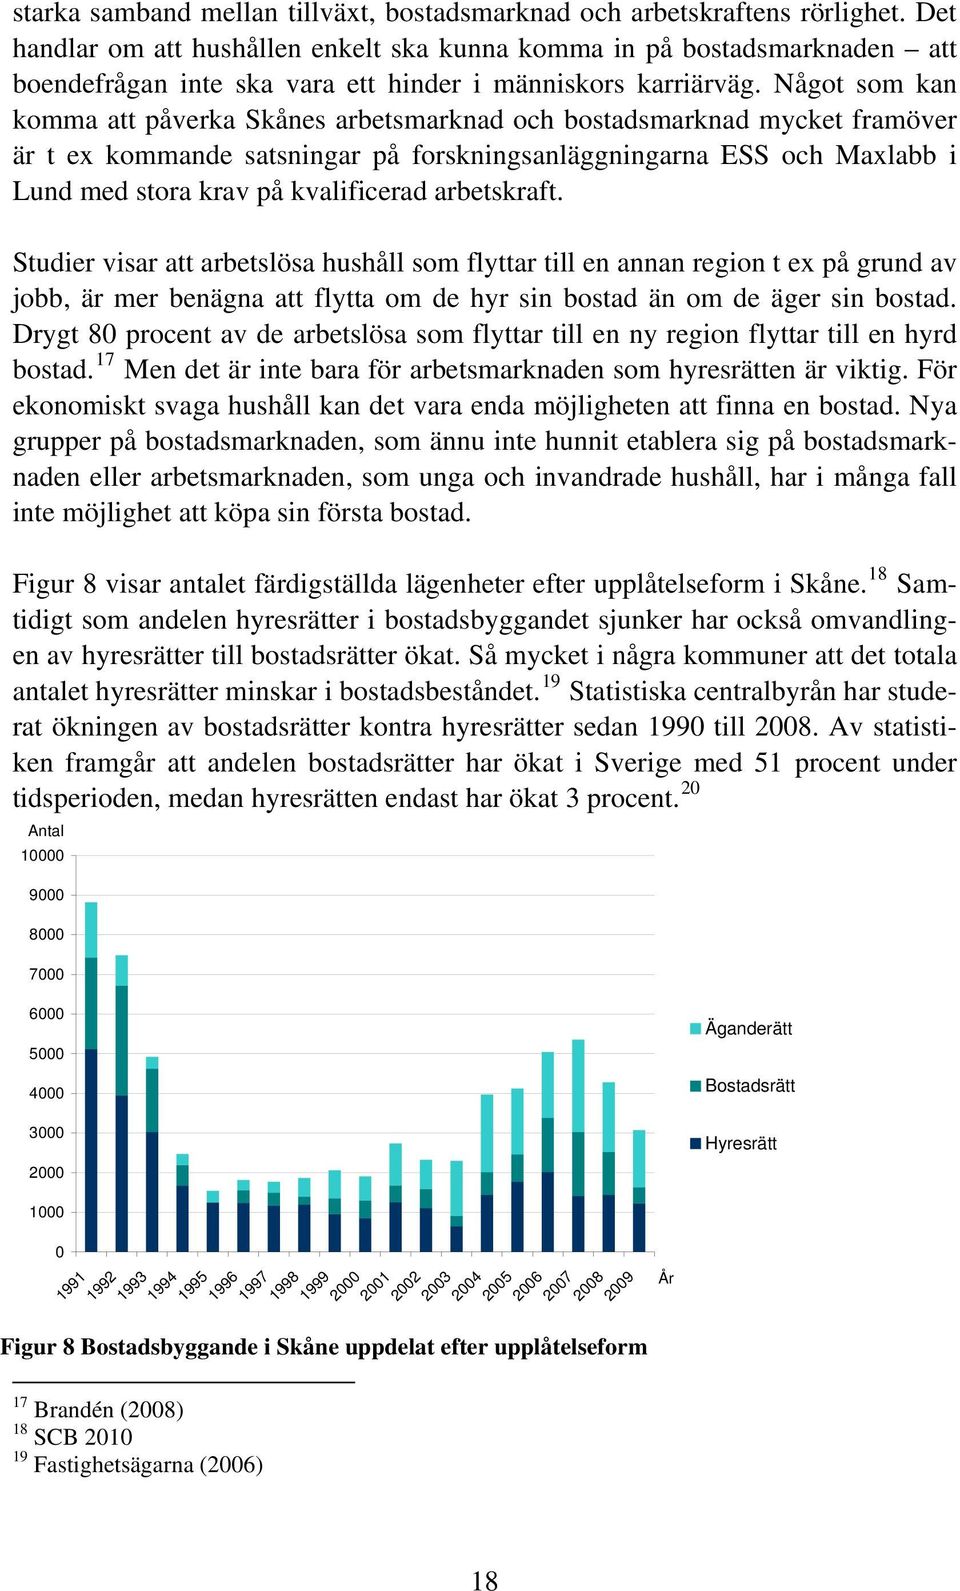 Något som kan komma att påverka Skånes arbetsmarknad och bostadsmarknad mycket framöver är t ex kommande satsningar på forskningsanläggningarna ESS och Maxlabb i Lund med stora krav på kvalificerad